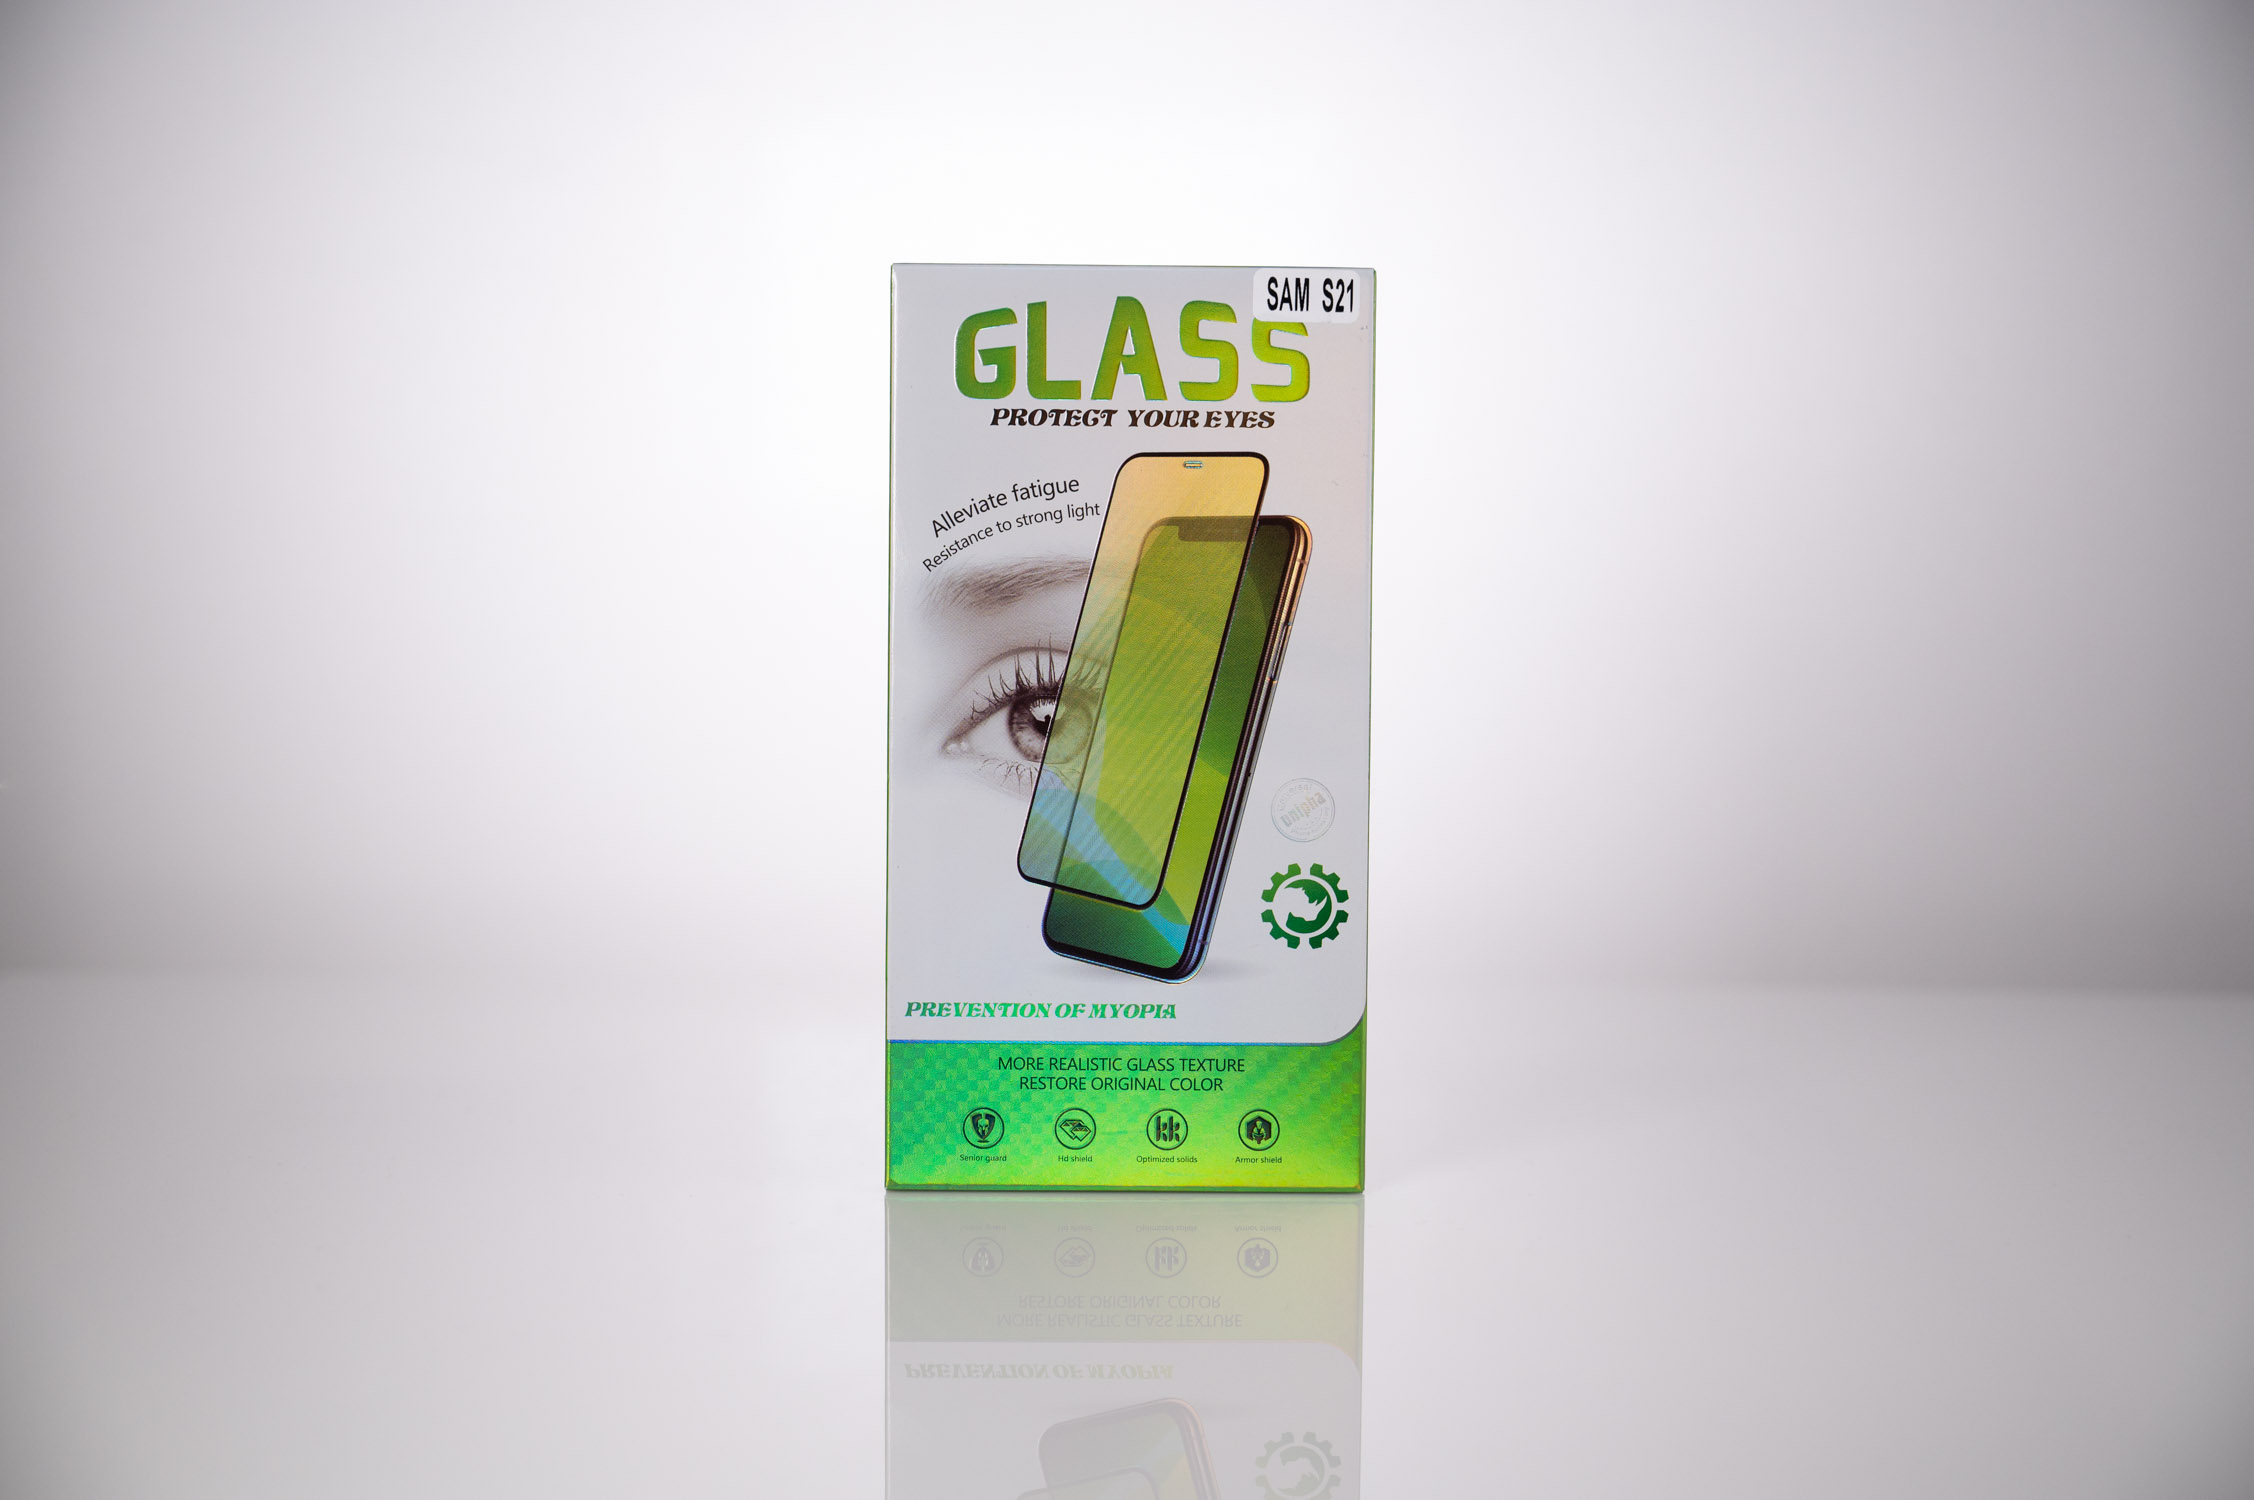 FOLIE STICLA  Spacer pentru Samsung Galaxy S21, grosime 0.3mm, acoperire totala ecran, strat special anti-ulei si anti-amprenta, Tempered Glass "SPPG-SM-GX-S21-TG" thumb